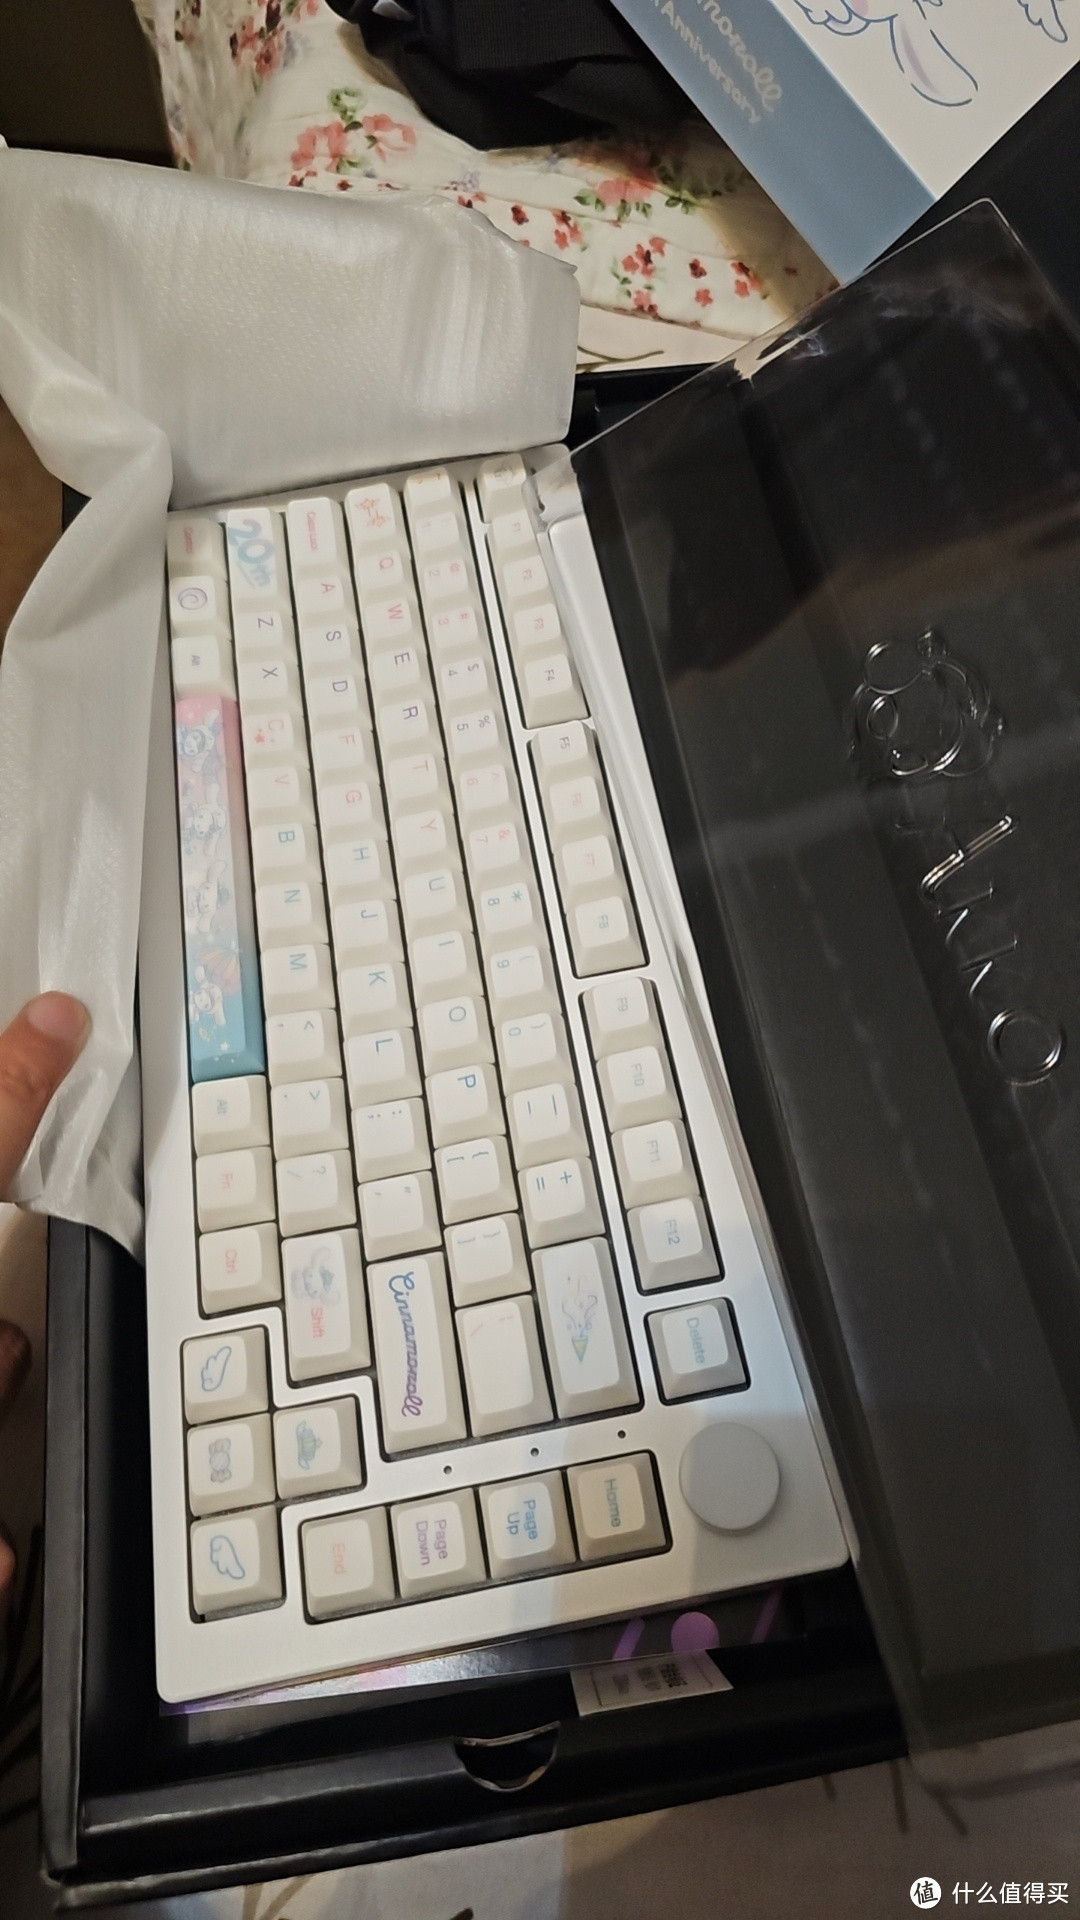 akko 机械键盘：已经沦落到白菜价了。